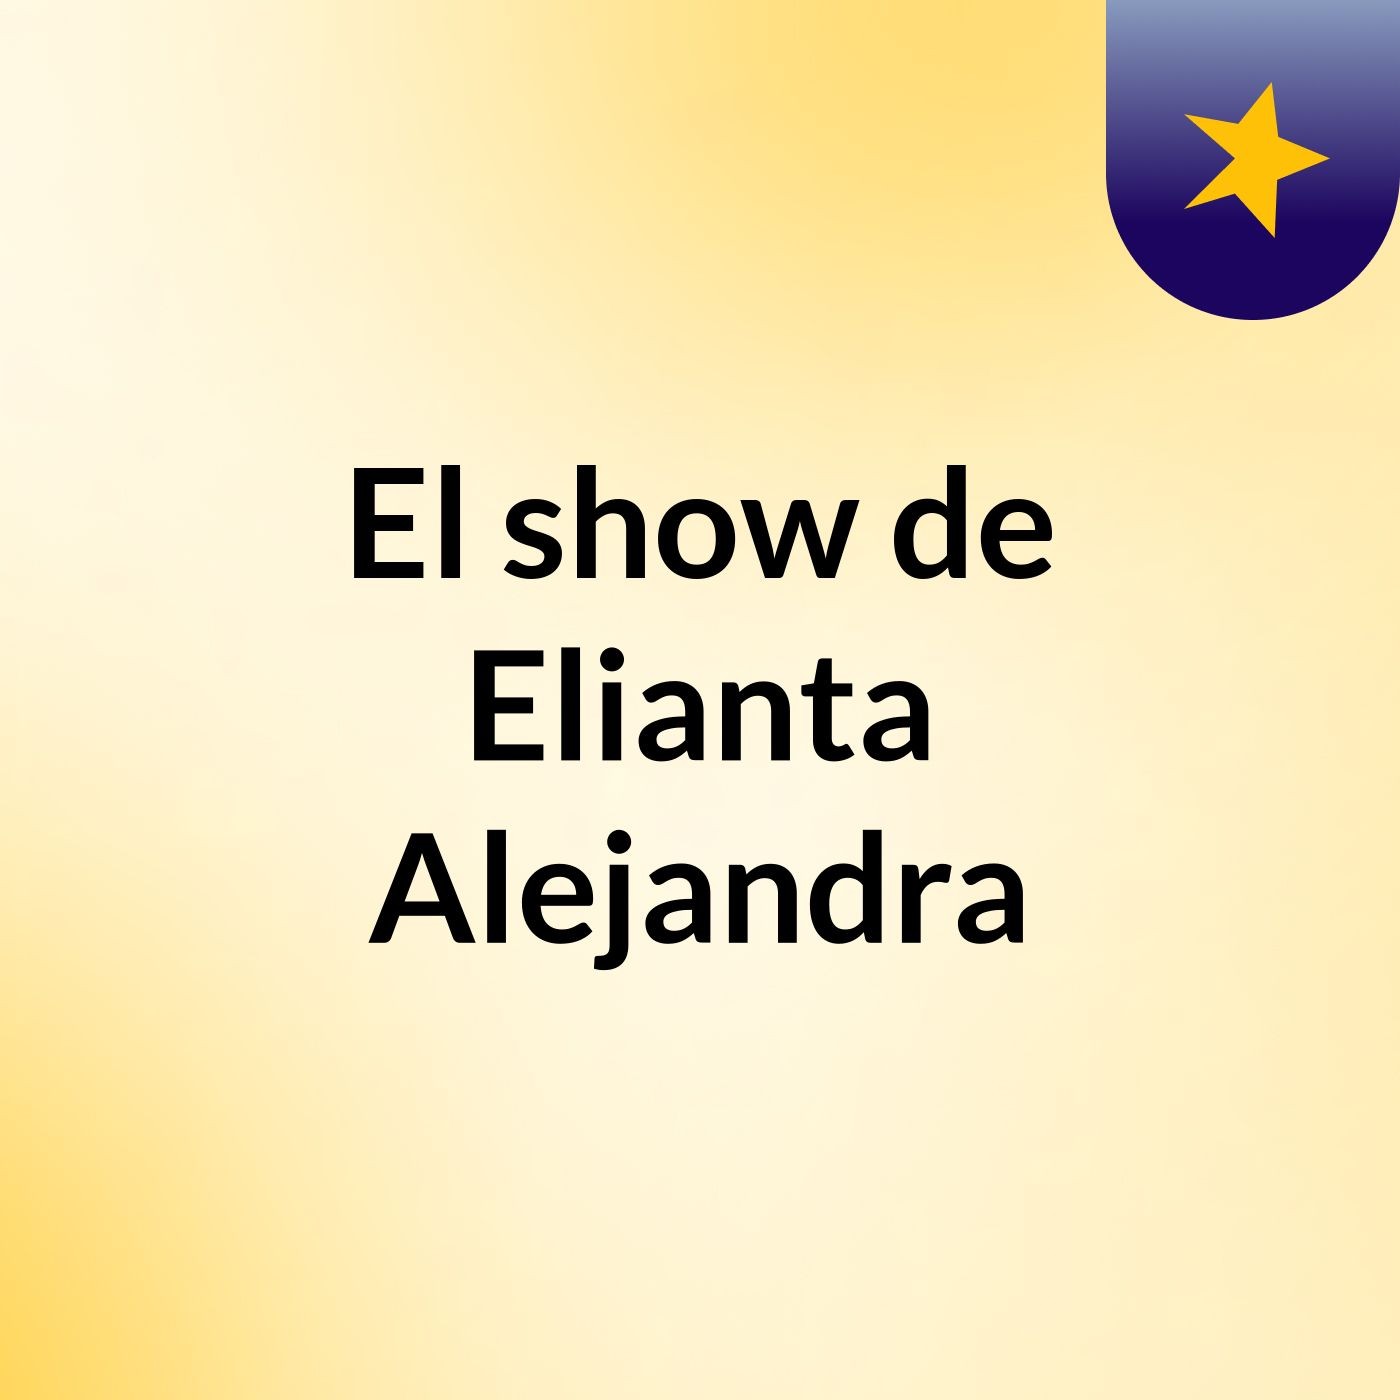 El show de Elianta Alejandra